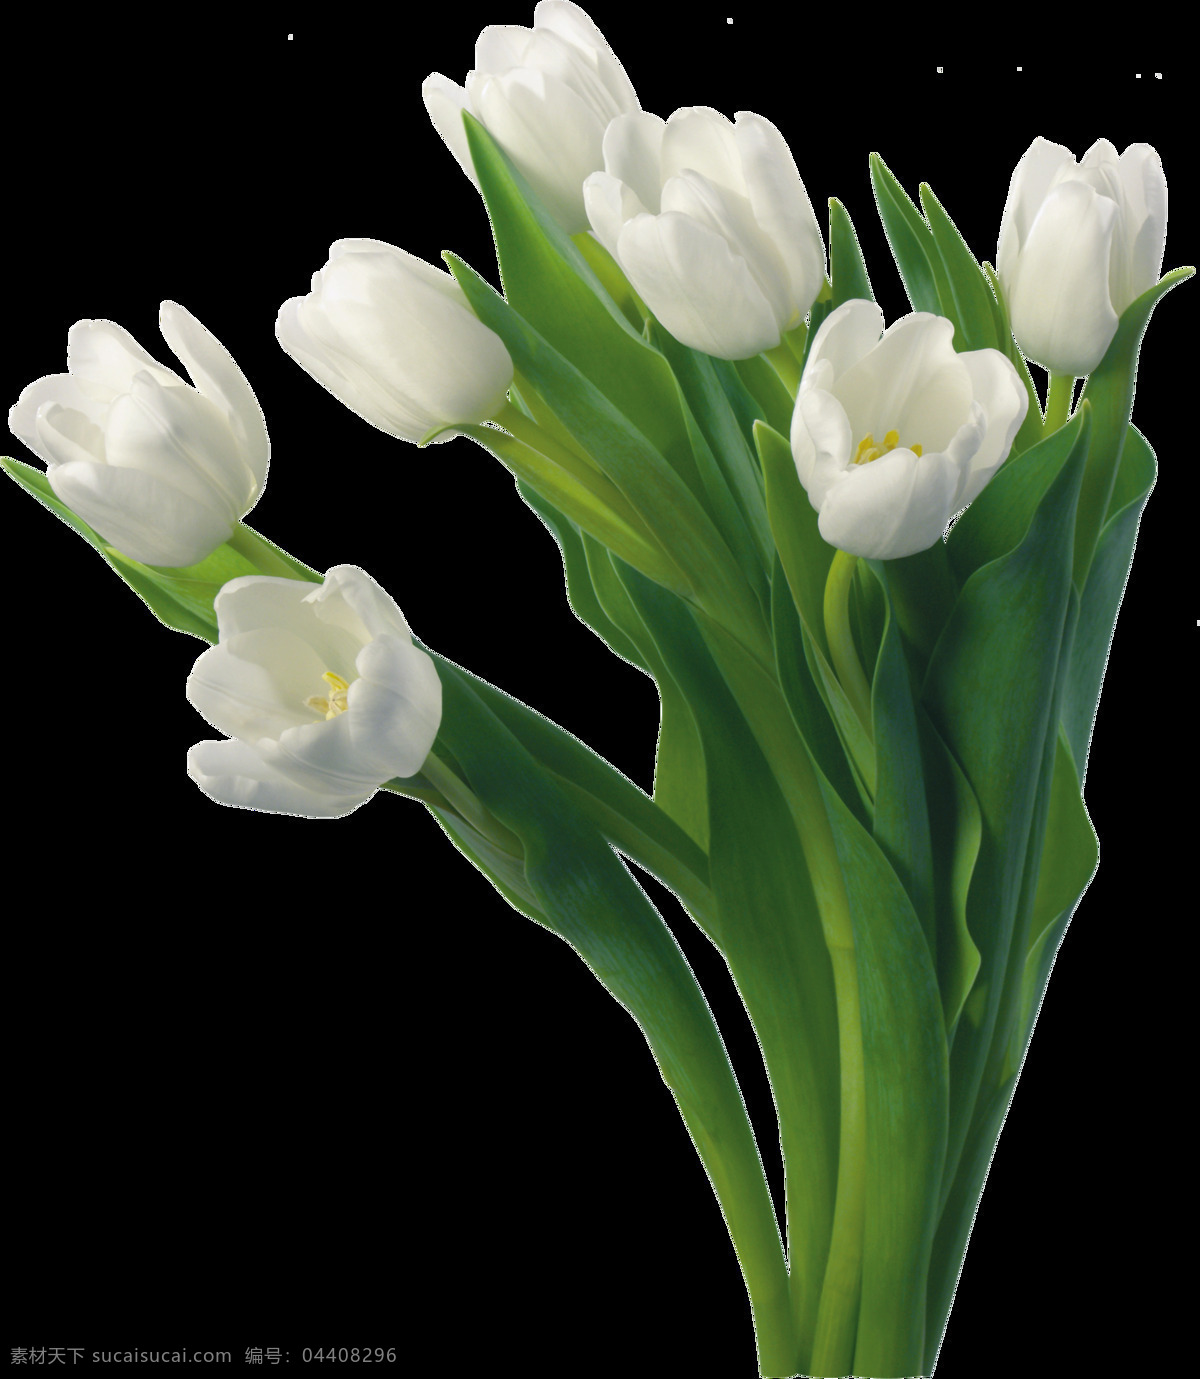 白色 郁金香 主题 元素 绿叶 装饰 花卉 花开 盛开 背景